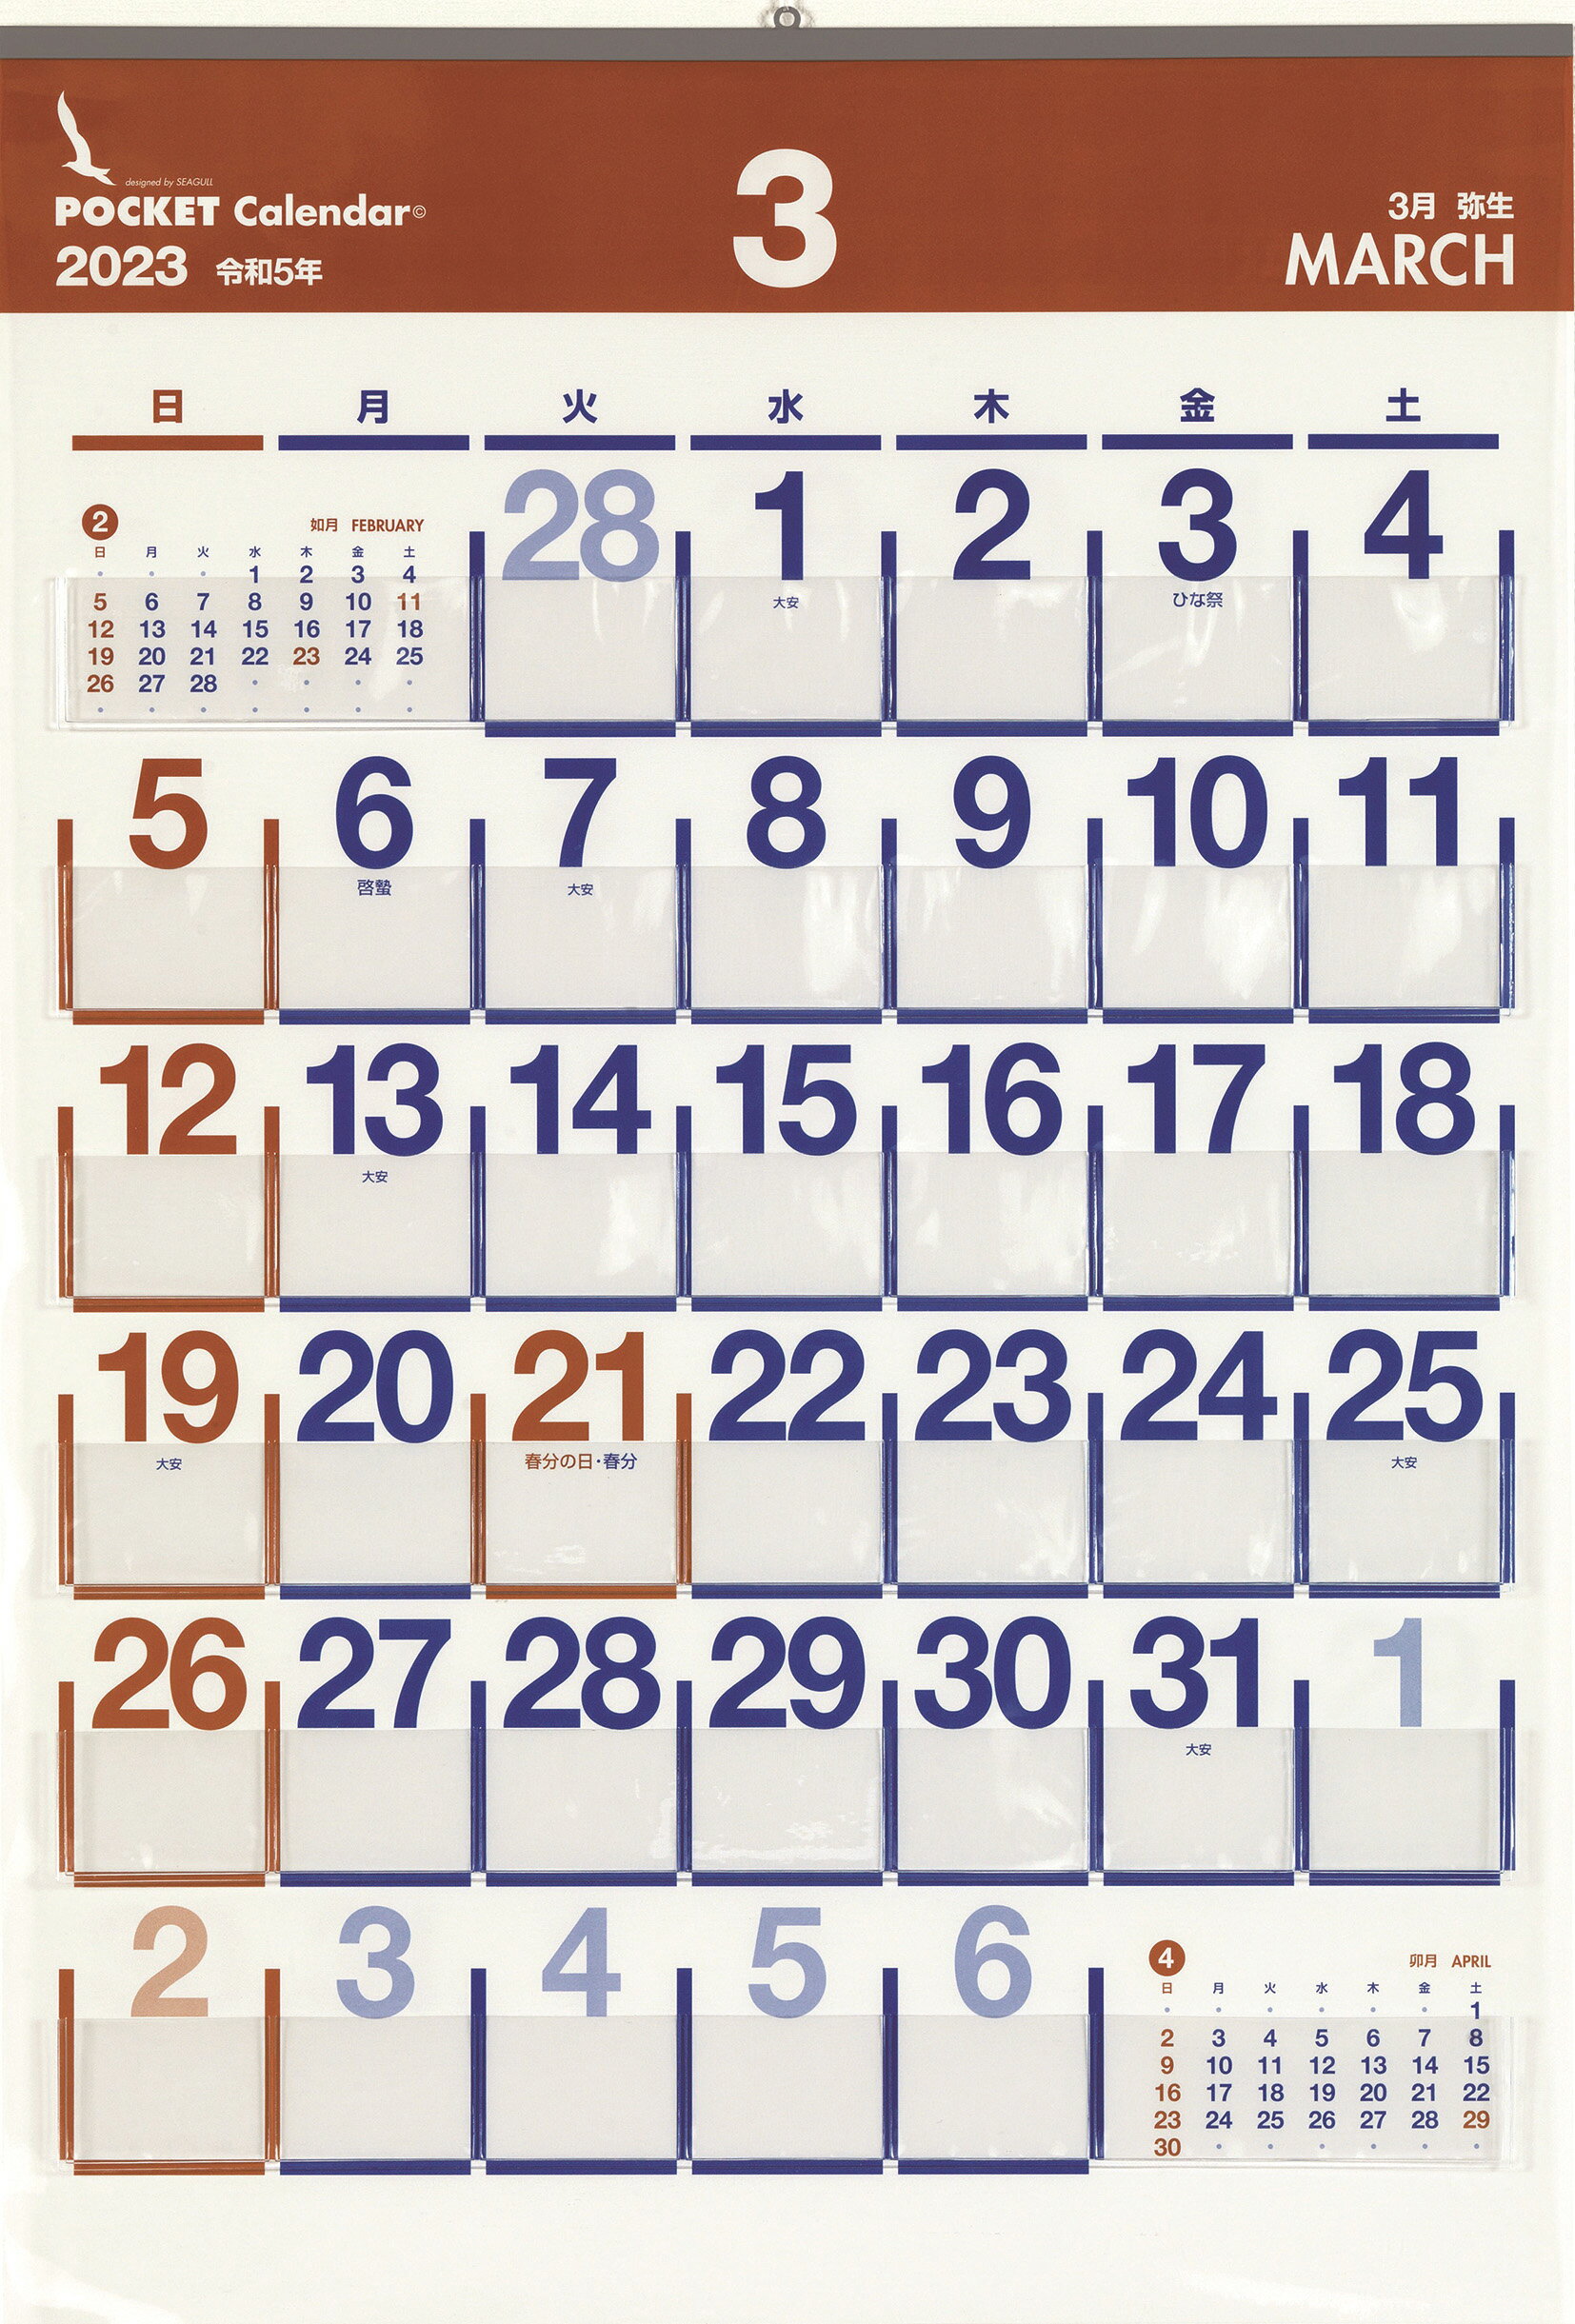 ●2024年1月から12月のカレンダーです。 自閉症の方への一か月のスケジュールを提示するのに便利です！ 一番上面のビニールのポケットシートには、一日ずつ区切られたポケットが付いています。 シンボルや写真などのカードで予定を提示。 「楽しみなお出かけはいつかなぁ」一か月の見通しがたちます。 【カレンダー本体】520ミリ×760ミリ　 　　　　　　　　　ポケットサイズ幅65ミリ ※カードや写真は付属しておりません ☆アドプラスのカレンダー専用絵カード（別売り）を是非いっしょにお使いください。ポケットカレンダー（2024年度版） ●2024年1月から12月のカレンダーです。 一番上面のビニールのポケットシートには、一日ずつ区切られたポケットが付いています。 前月や次月のカレンダーもついていて便利。 絵カードを入れて月刊スケジュールとして使えます。 アドプラスのポケットカレンダー用絵カード（別売り）を一緒にお使いいただくのがおススメです。 カレンダーと絵カードのお得なセット商品もございます。 商品詳細 シンボルや写真などのカードで一か月の予定を提示できる、ポケット付きのカレンダーです。 SPEC サイズ：520ミリ×760ミリ ポケットサイズ幅65ミリ 構成 本体 備考 ビニールポケットカレンダー用の便利アイテム「かくれんぼう」シリーズがおススメです。 知っておいていただきたいこと ●2024年1月から12月のカレンダーです。 ※カードや写真は付属しておりません。 別売りのポケットカレンダー用絵カード（アドプラスオリジナル）が、ポケットにぴったりサイズでおススメです！セット商品もあります。